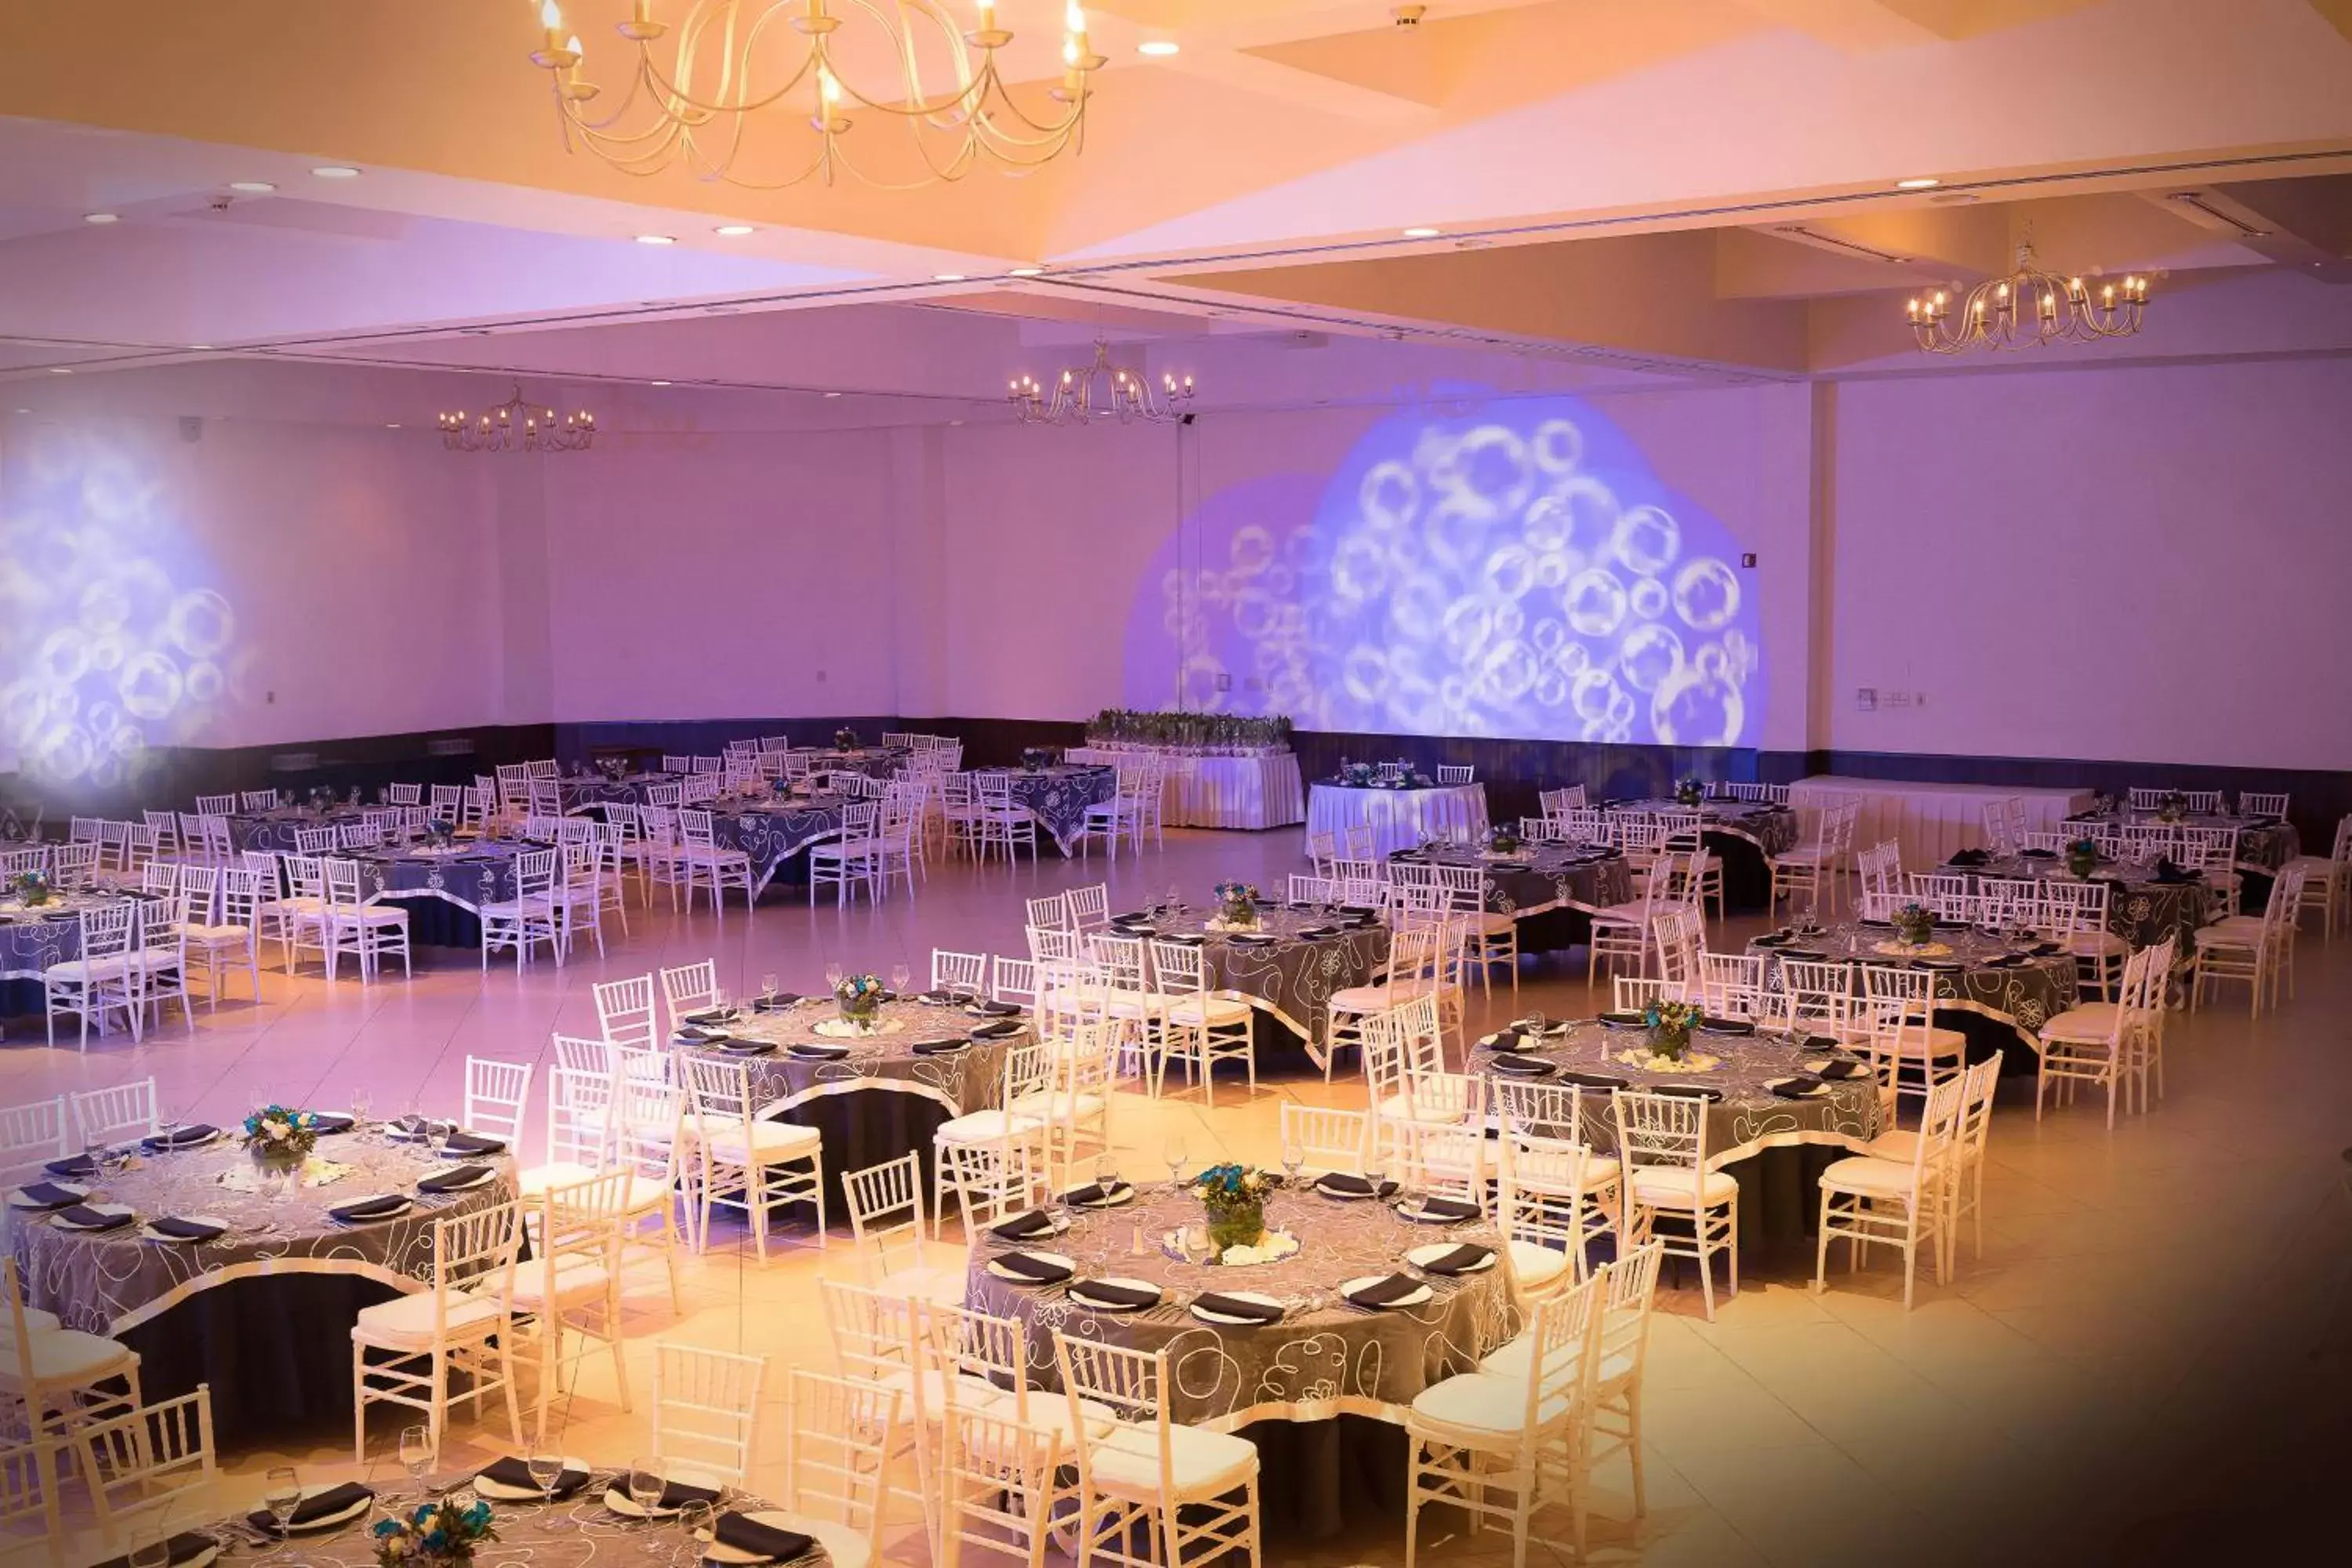 Banquet/Function facilities, Banquet Facilities in Courtyard by Marriott Puebla Las Animas